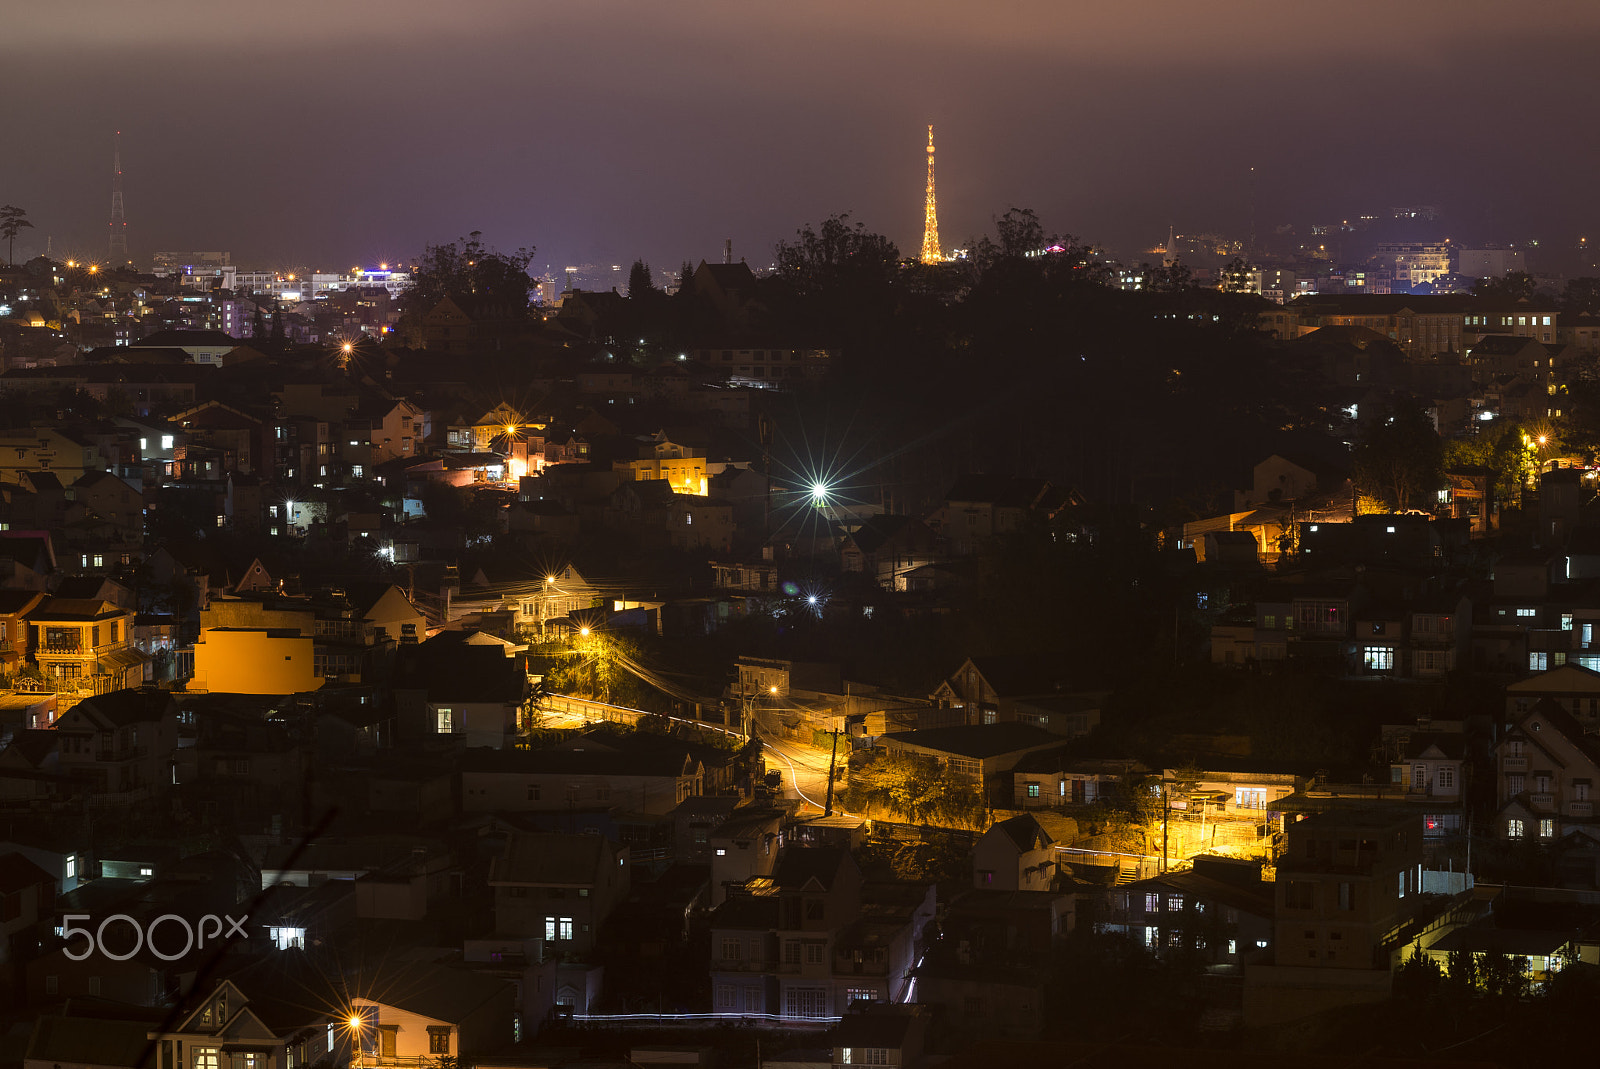 Nikon D610 sample photo. Dalat at night photography